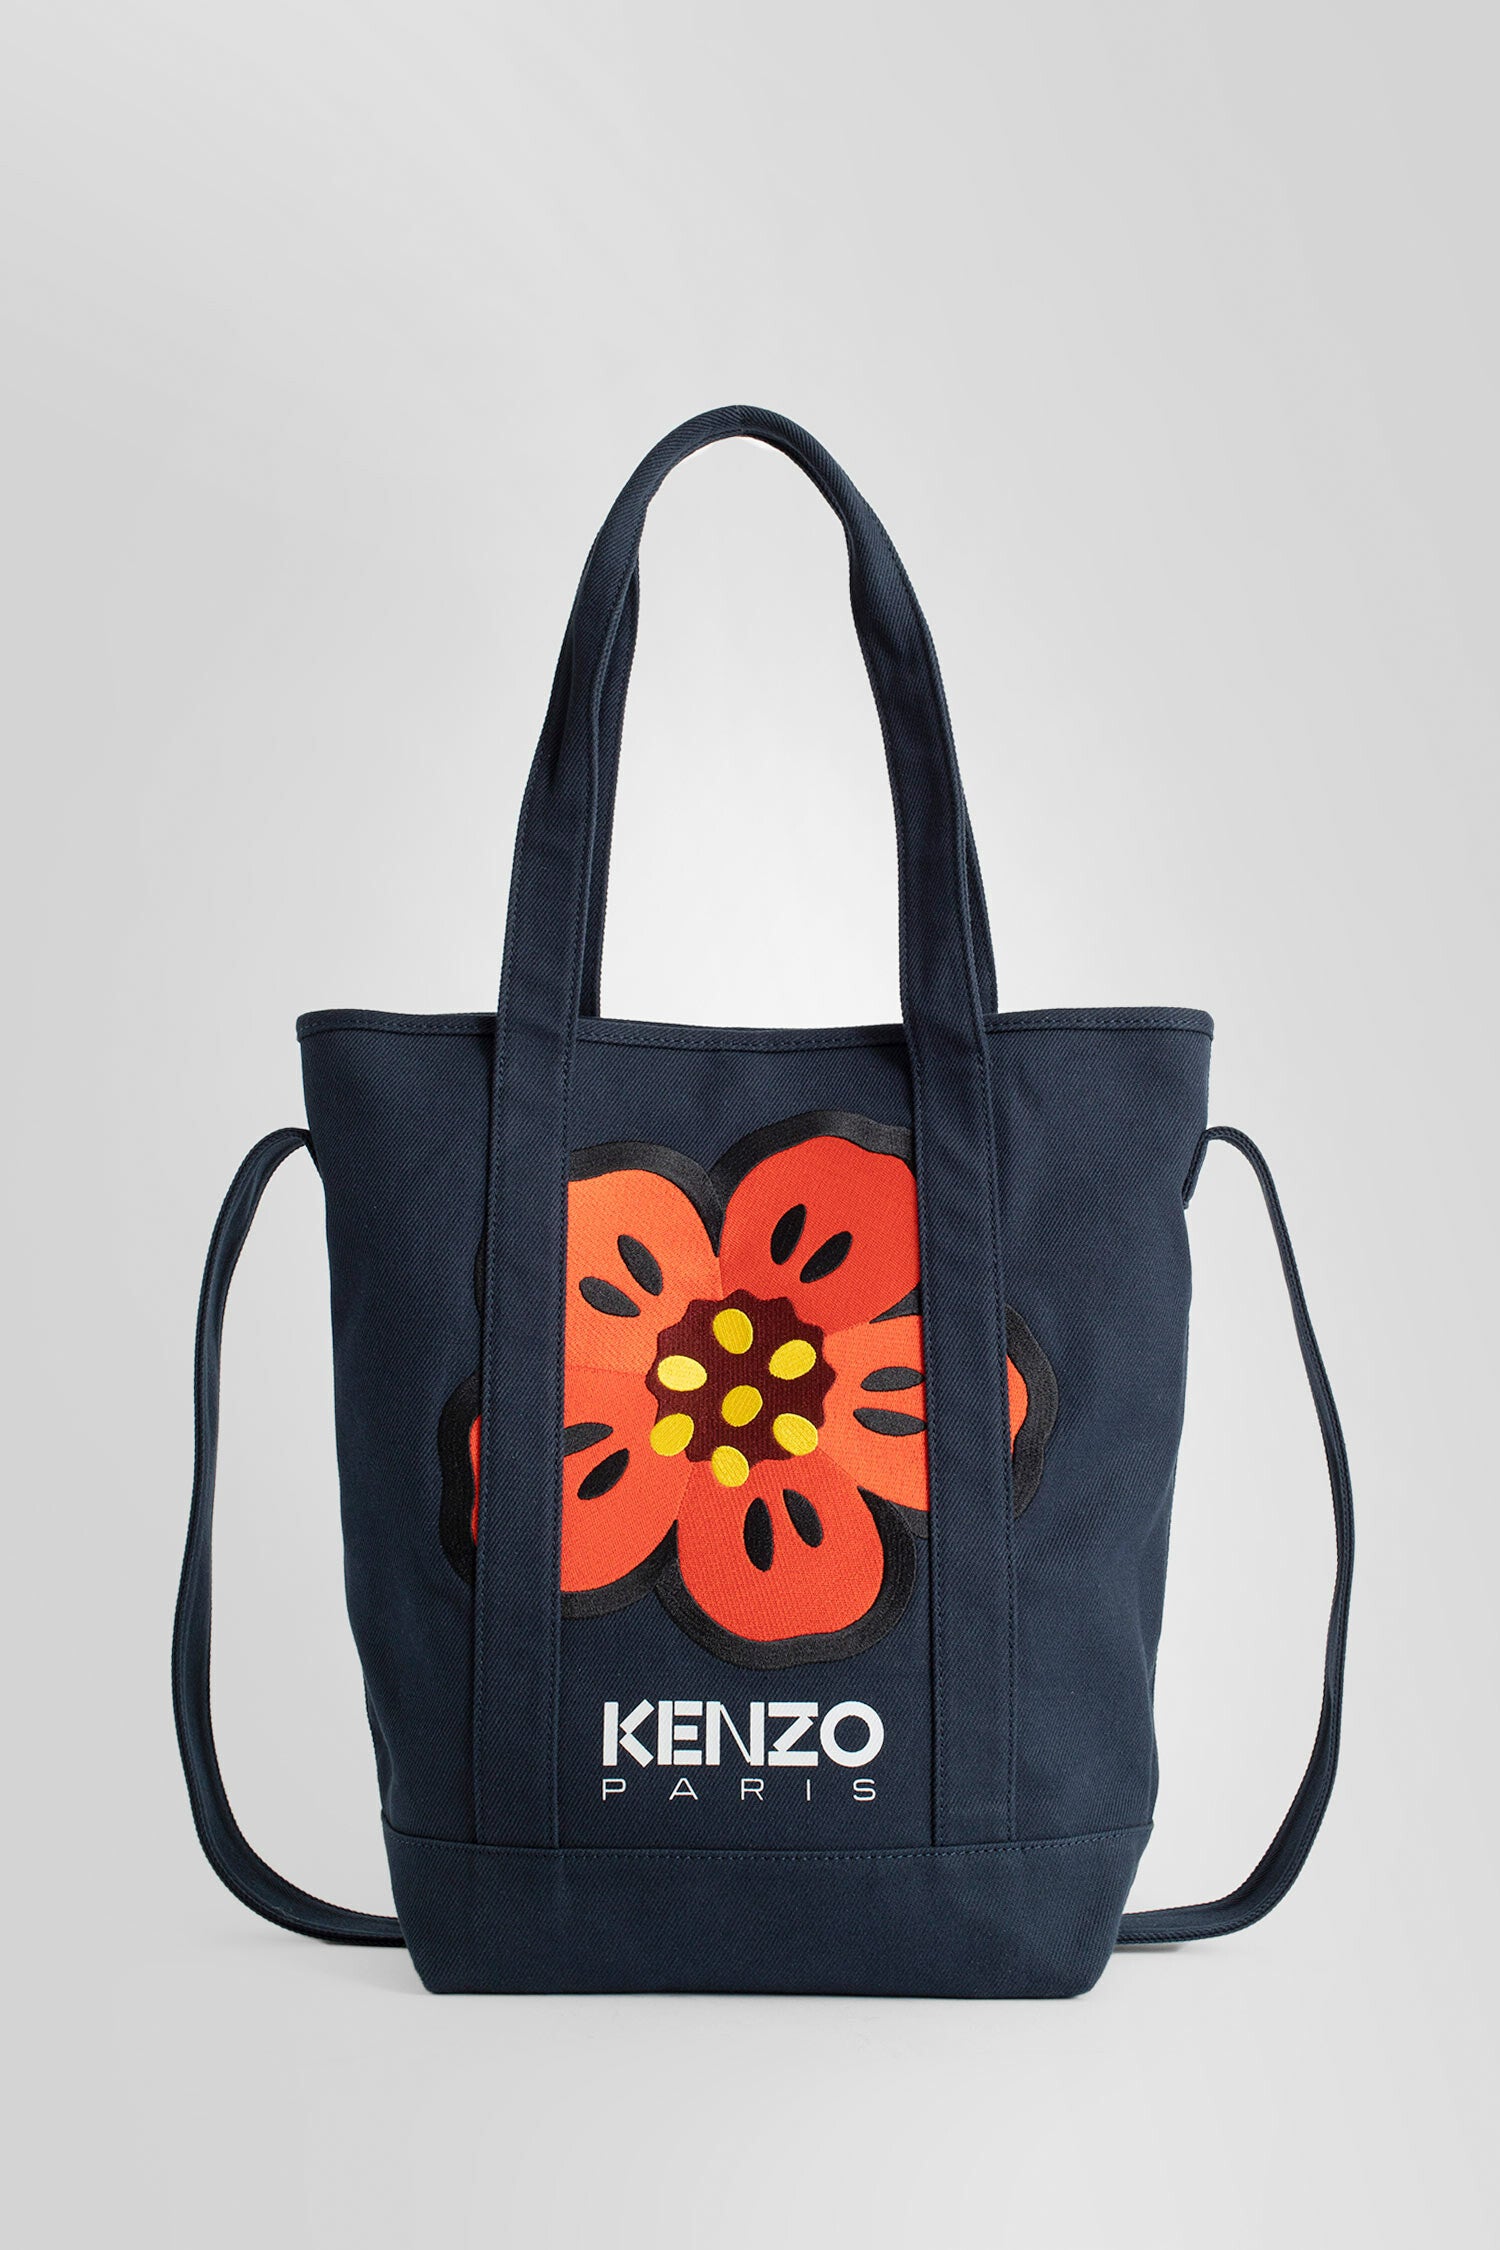 KENZO BY NIGO TOTE BAGS